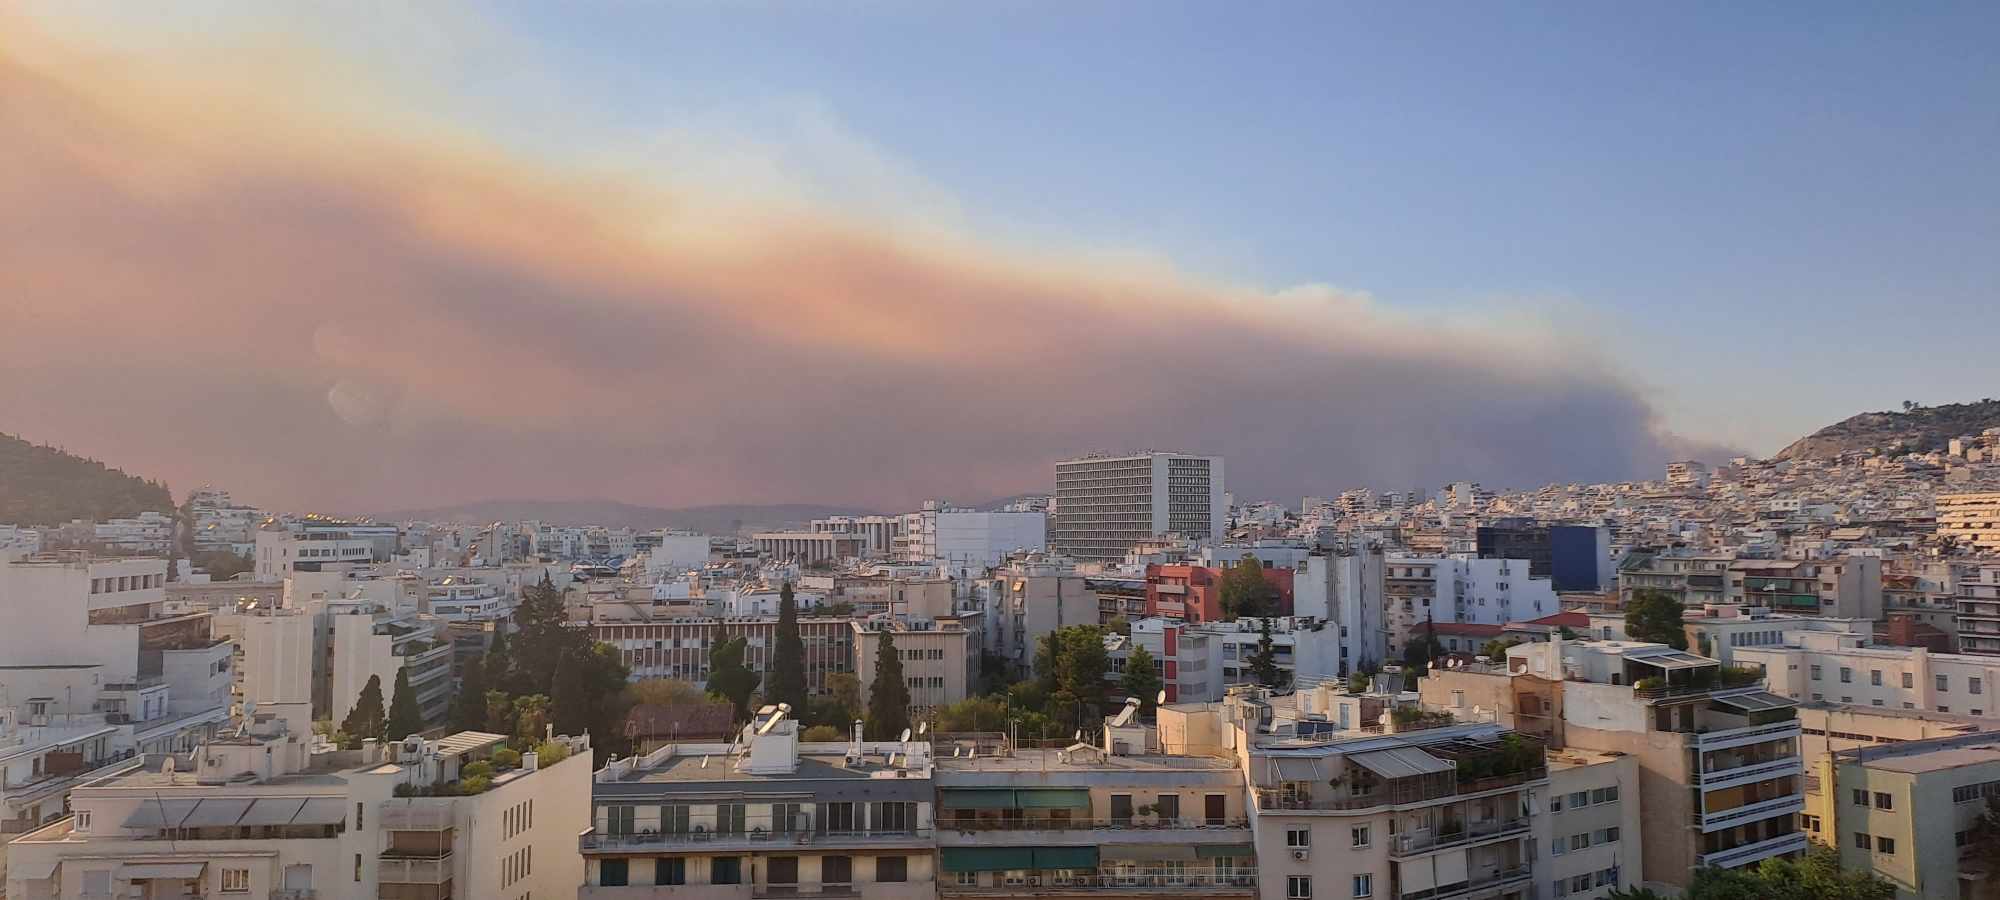 Οι καπνοί της φωτιάς, όπως φαίνονται από το κέντρο της Αθήνας